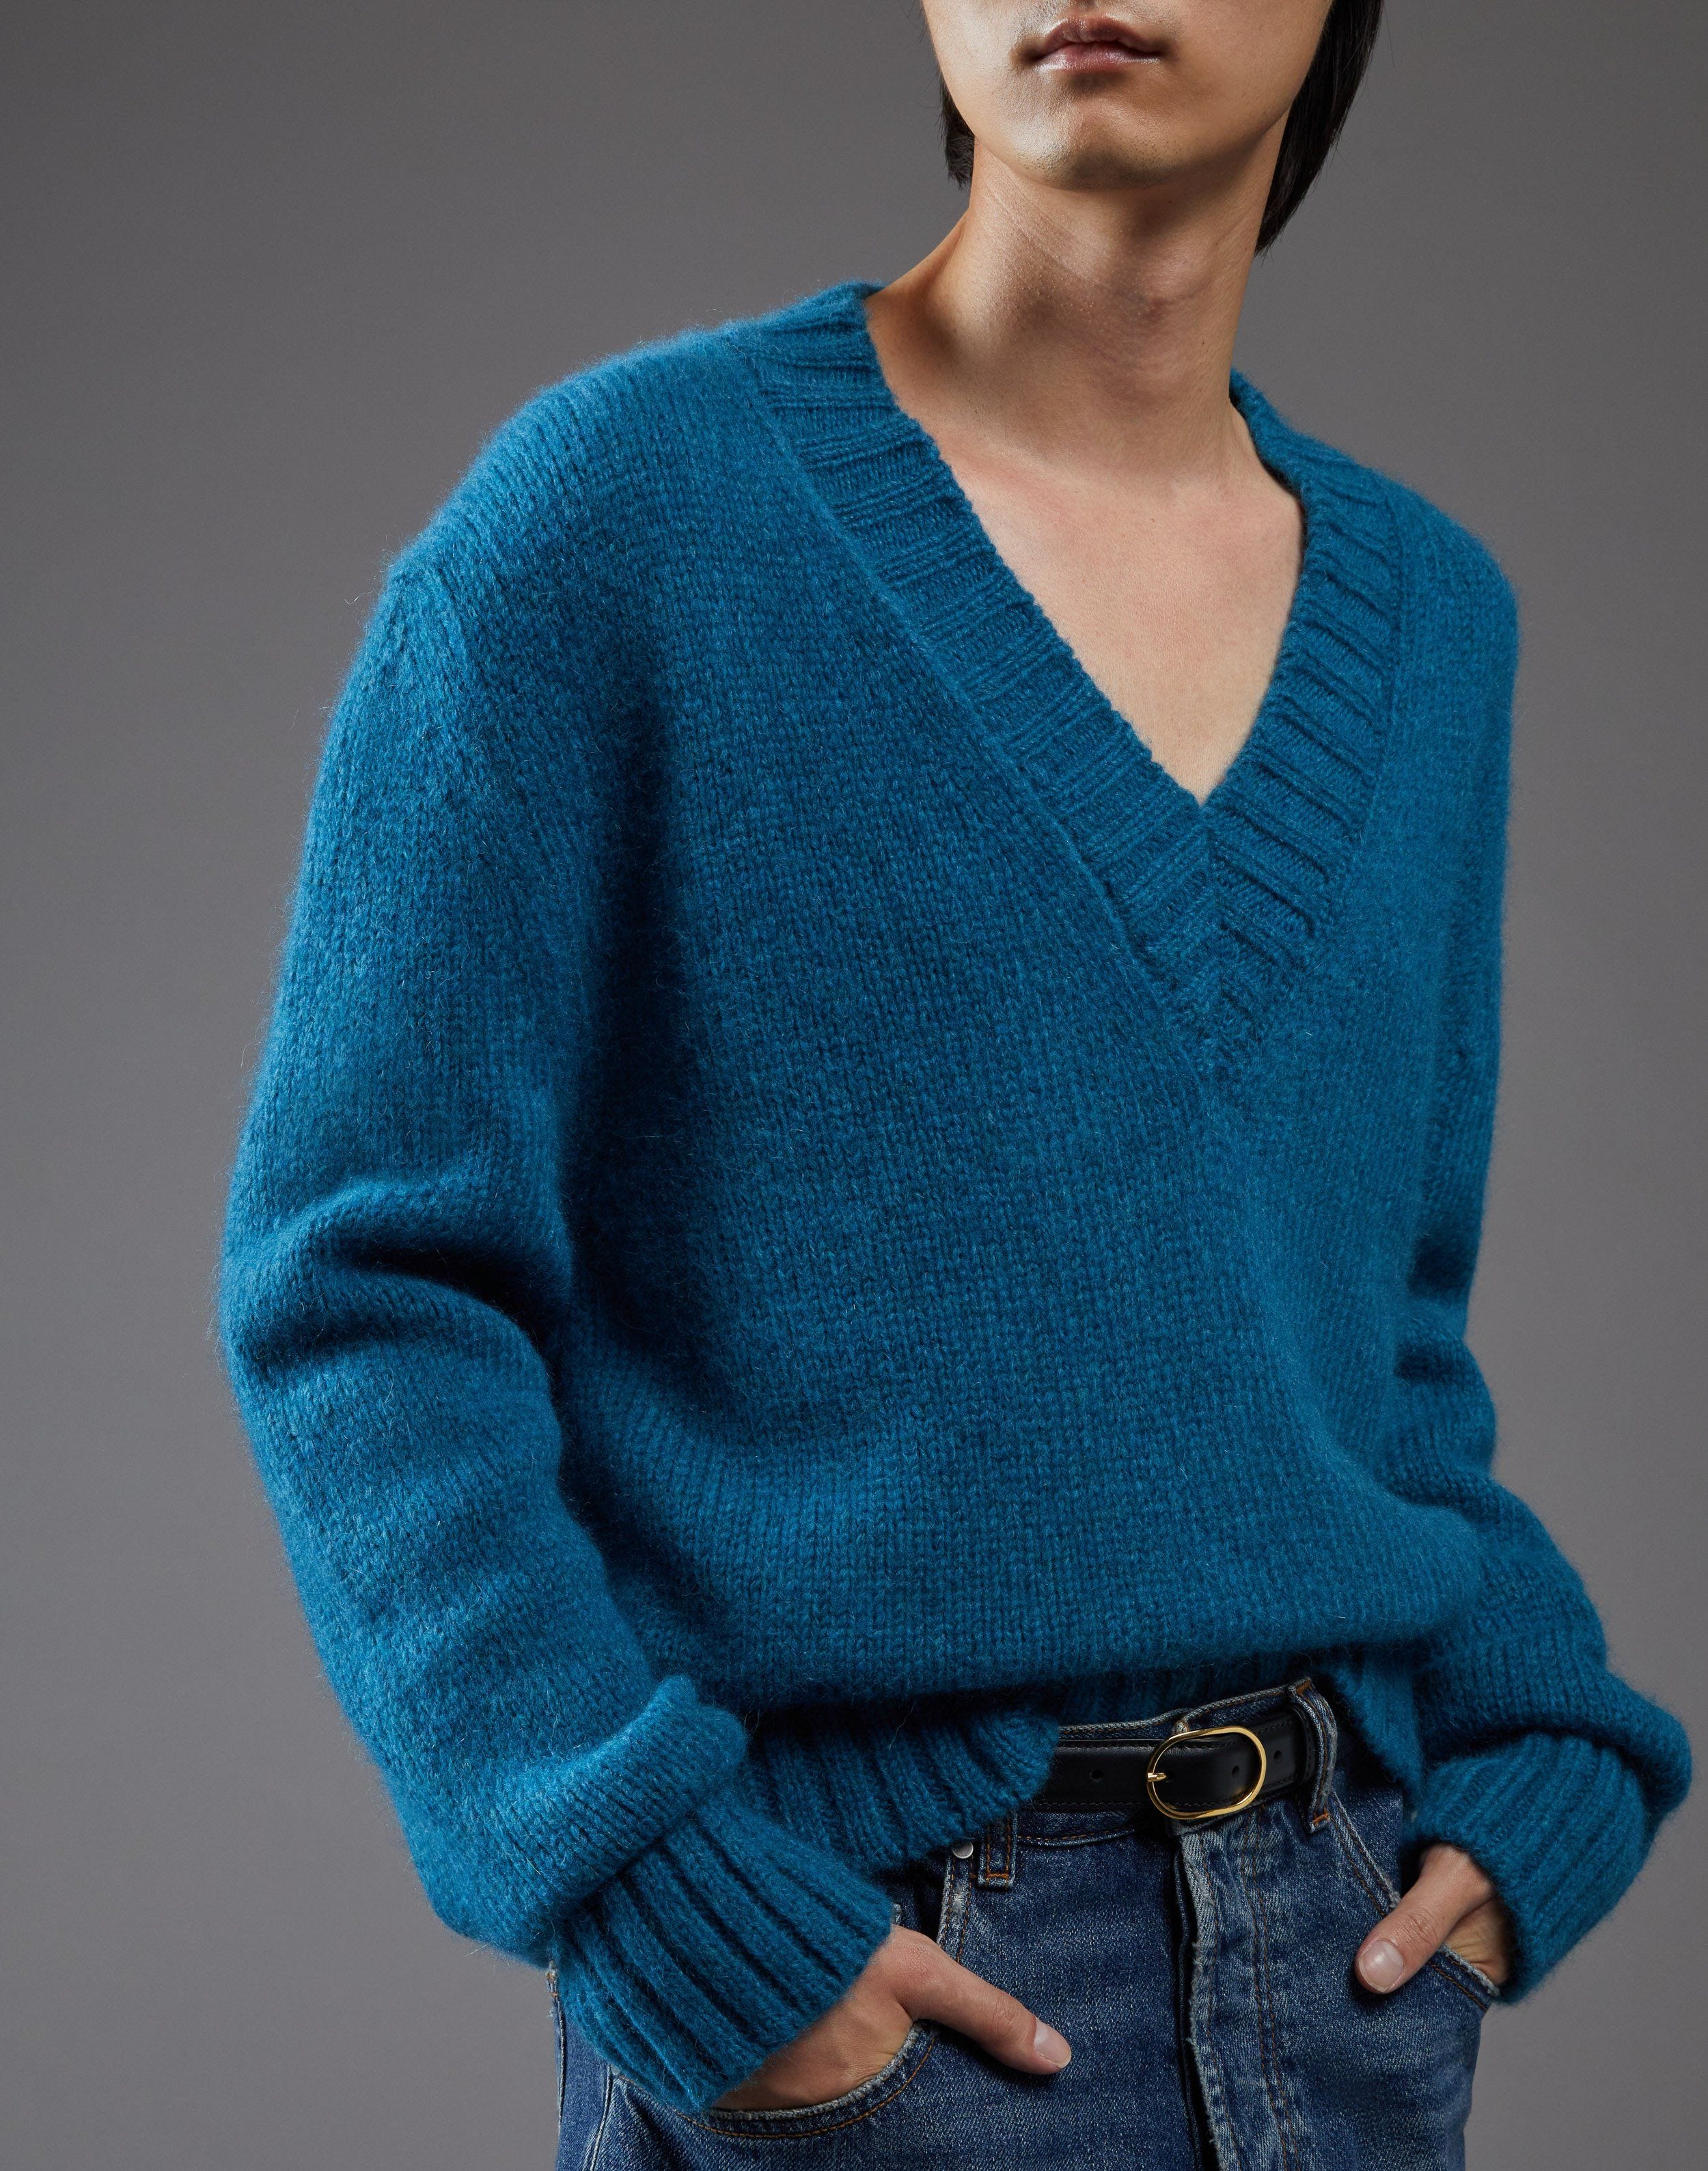 Teal V-neck sweater